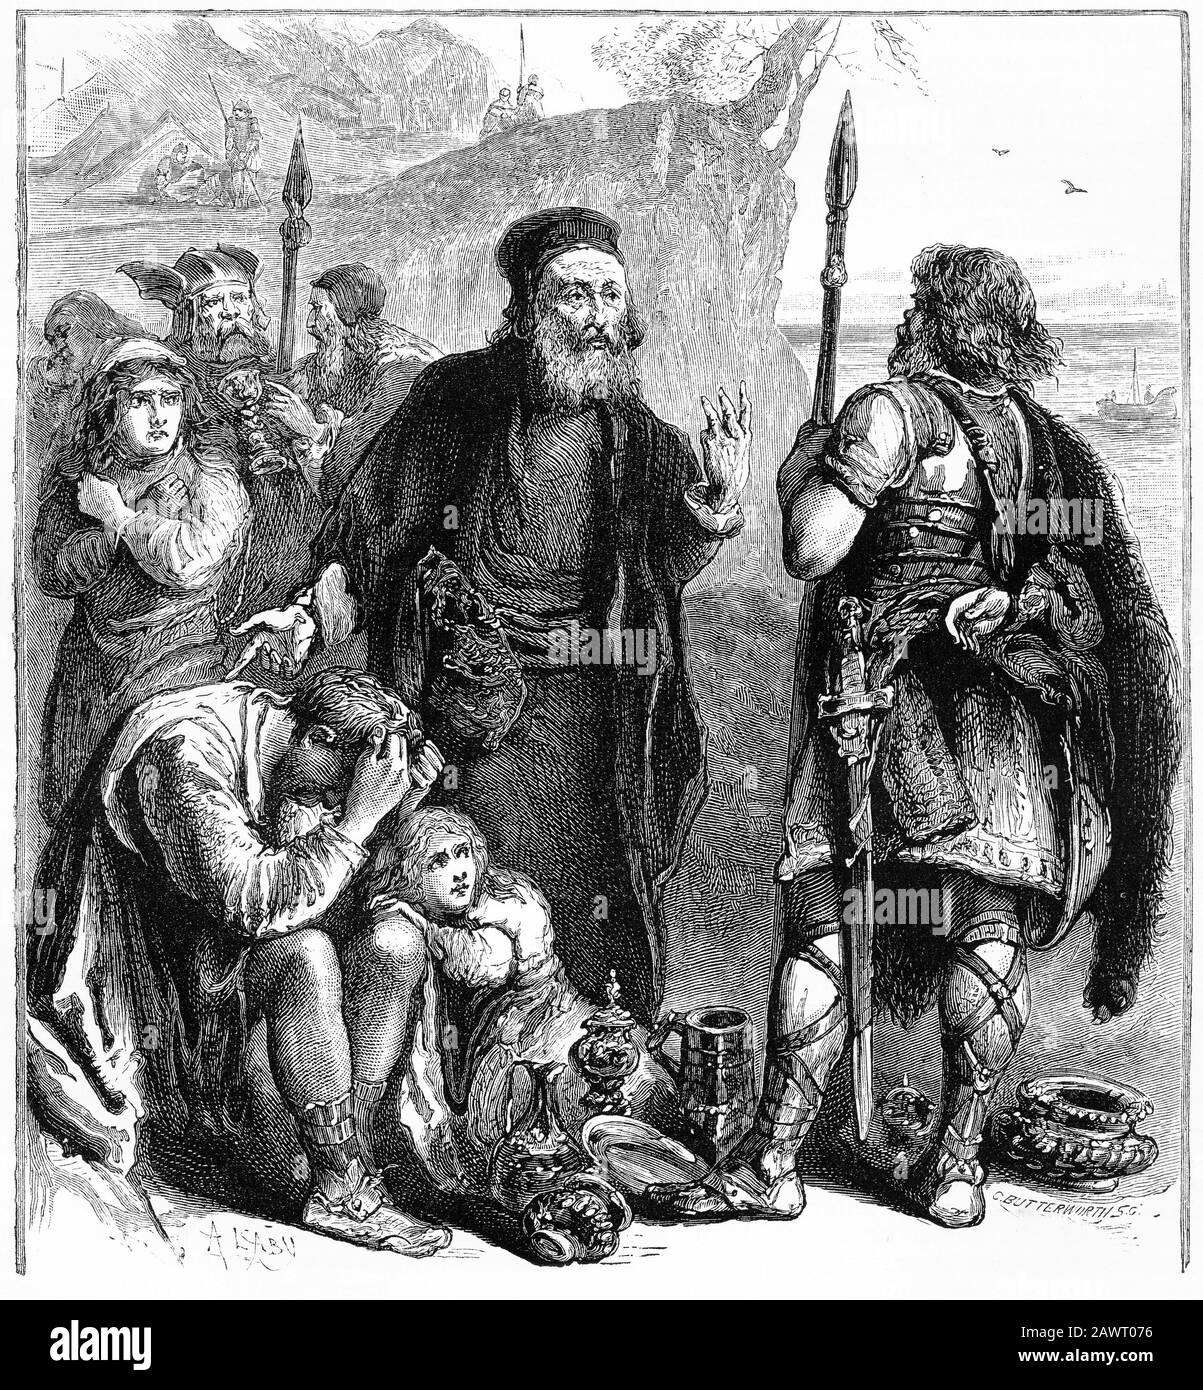 Gravure de juifs qui vendaient soi-disant des chrétiens comme esclaves en Europe pendant les 600 en Europe Banque D'Images